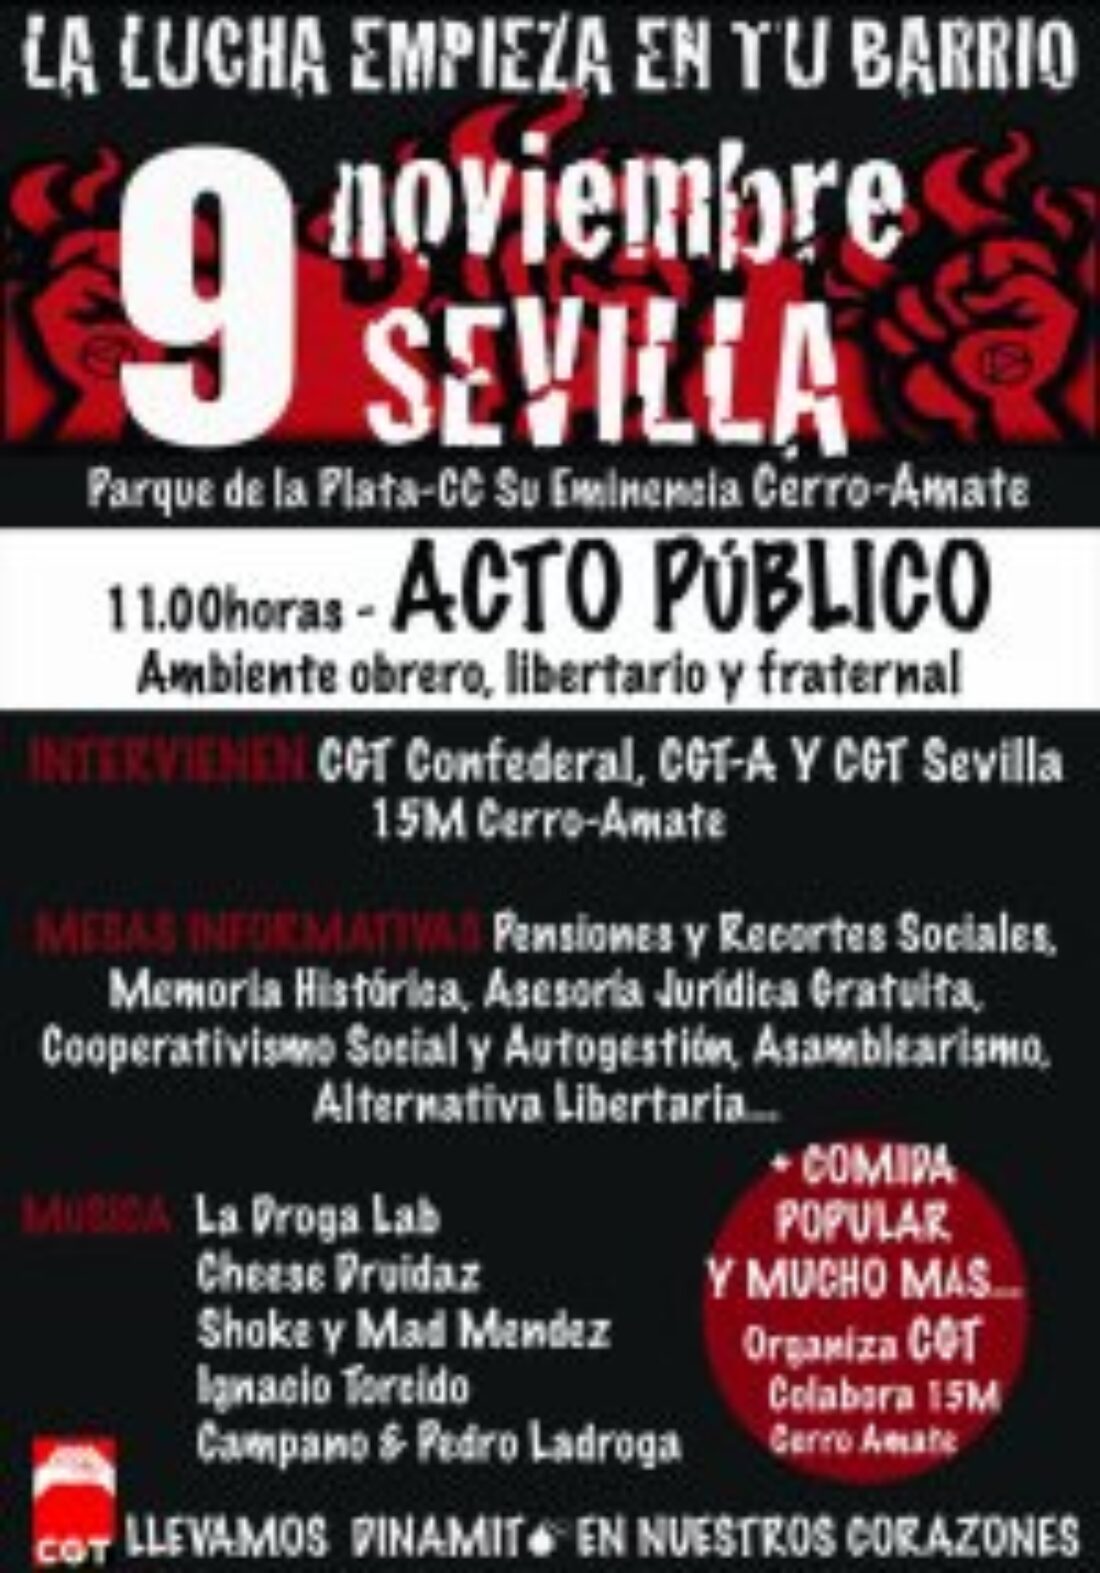 Acto público organizado por CGT Sevilla y 15M Cerro-Amate